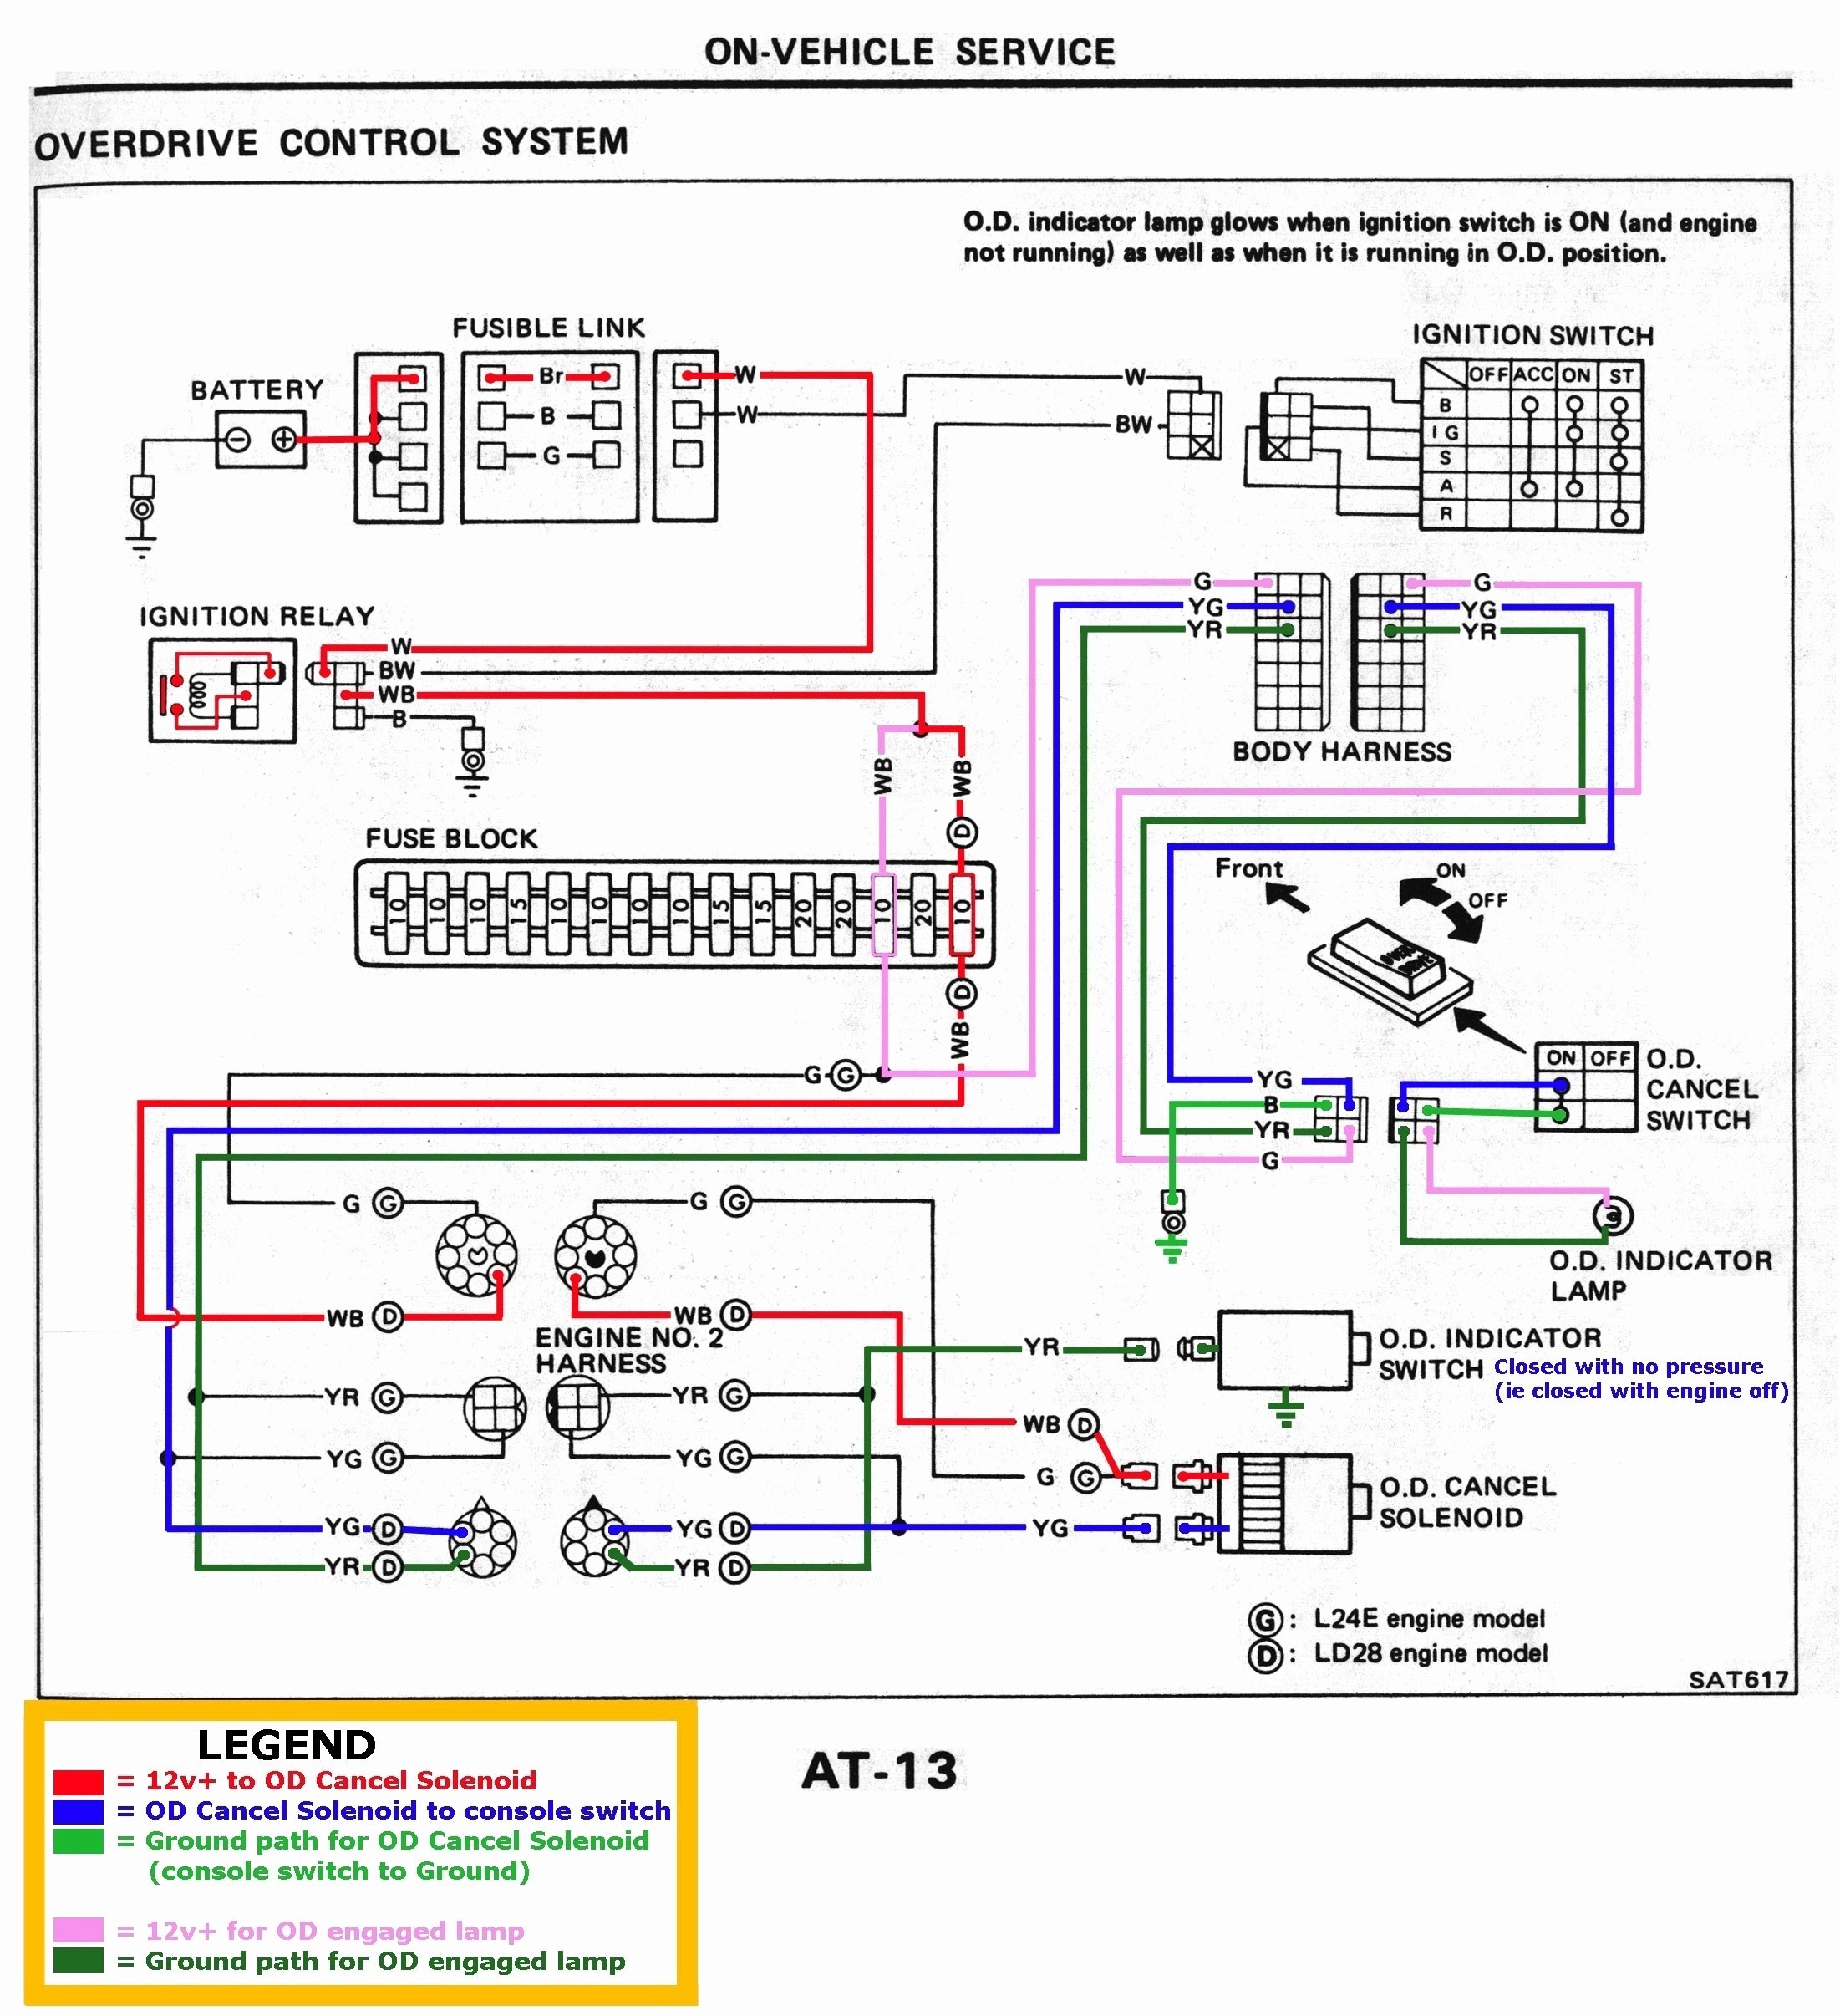 Diagram Of Car Motor 2 Stroke Engine Diagram Of Diagram Of Car Motor